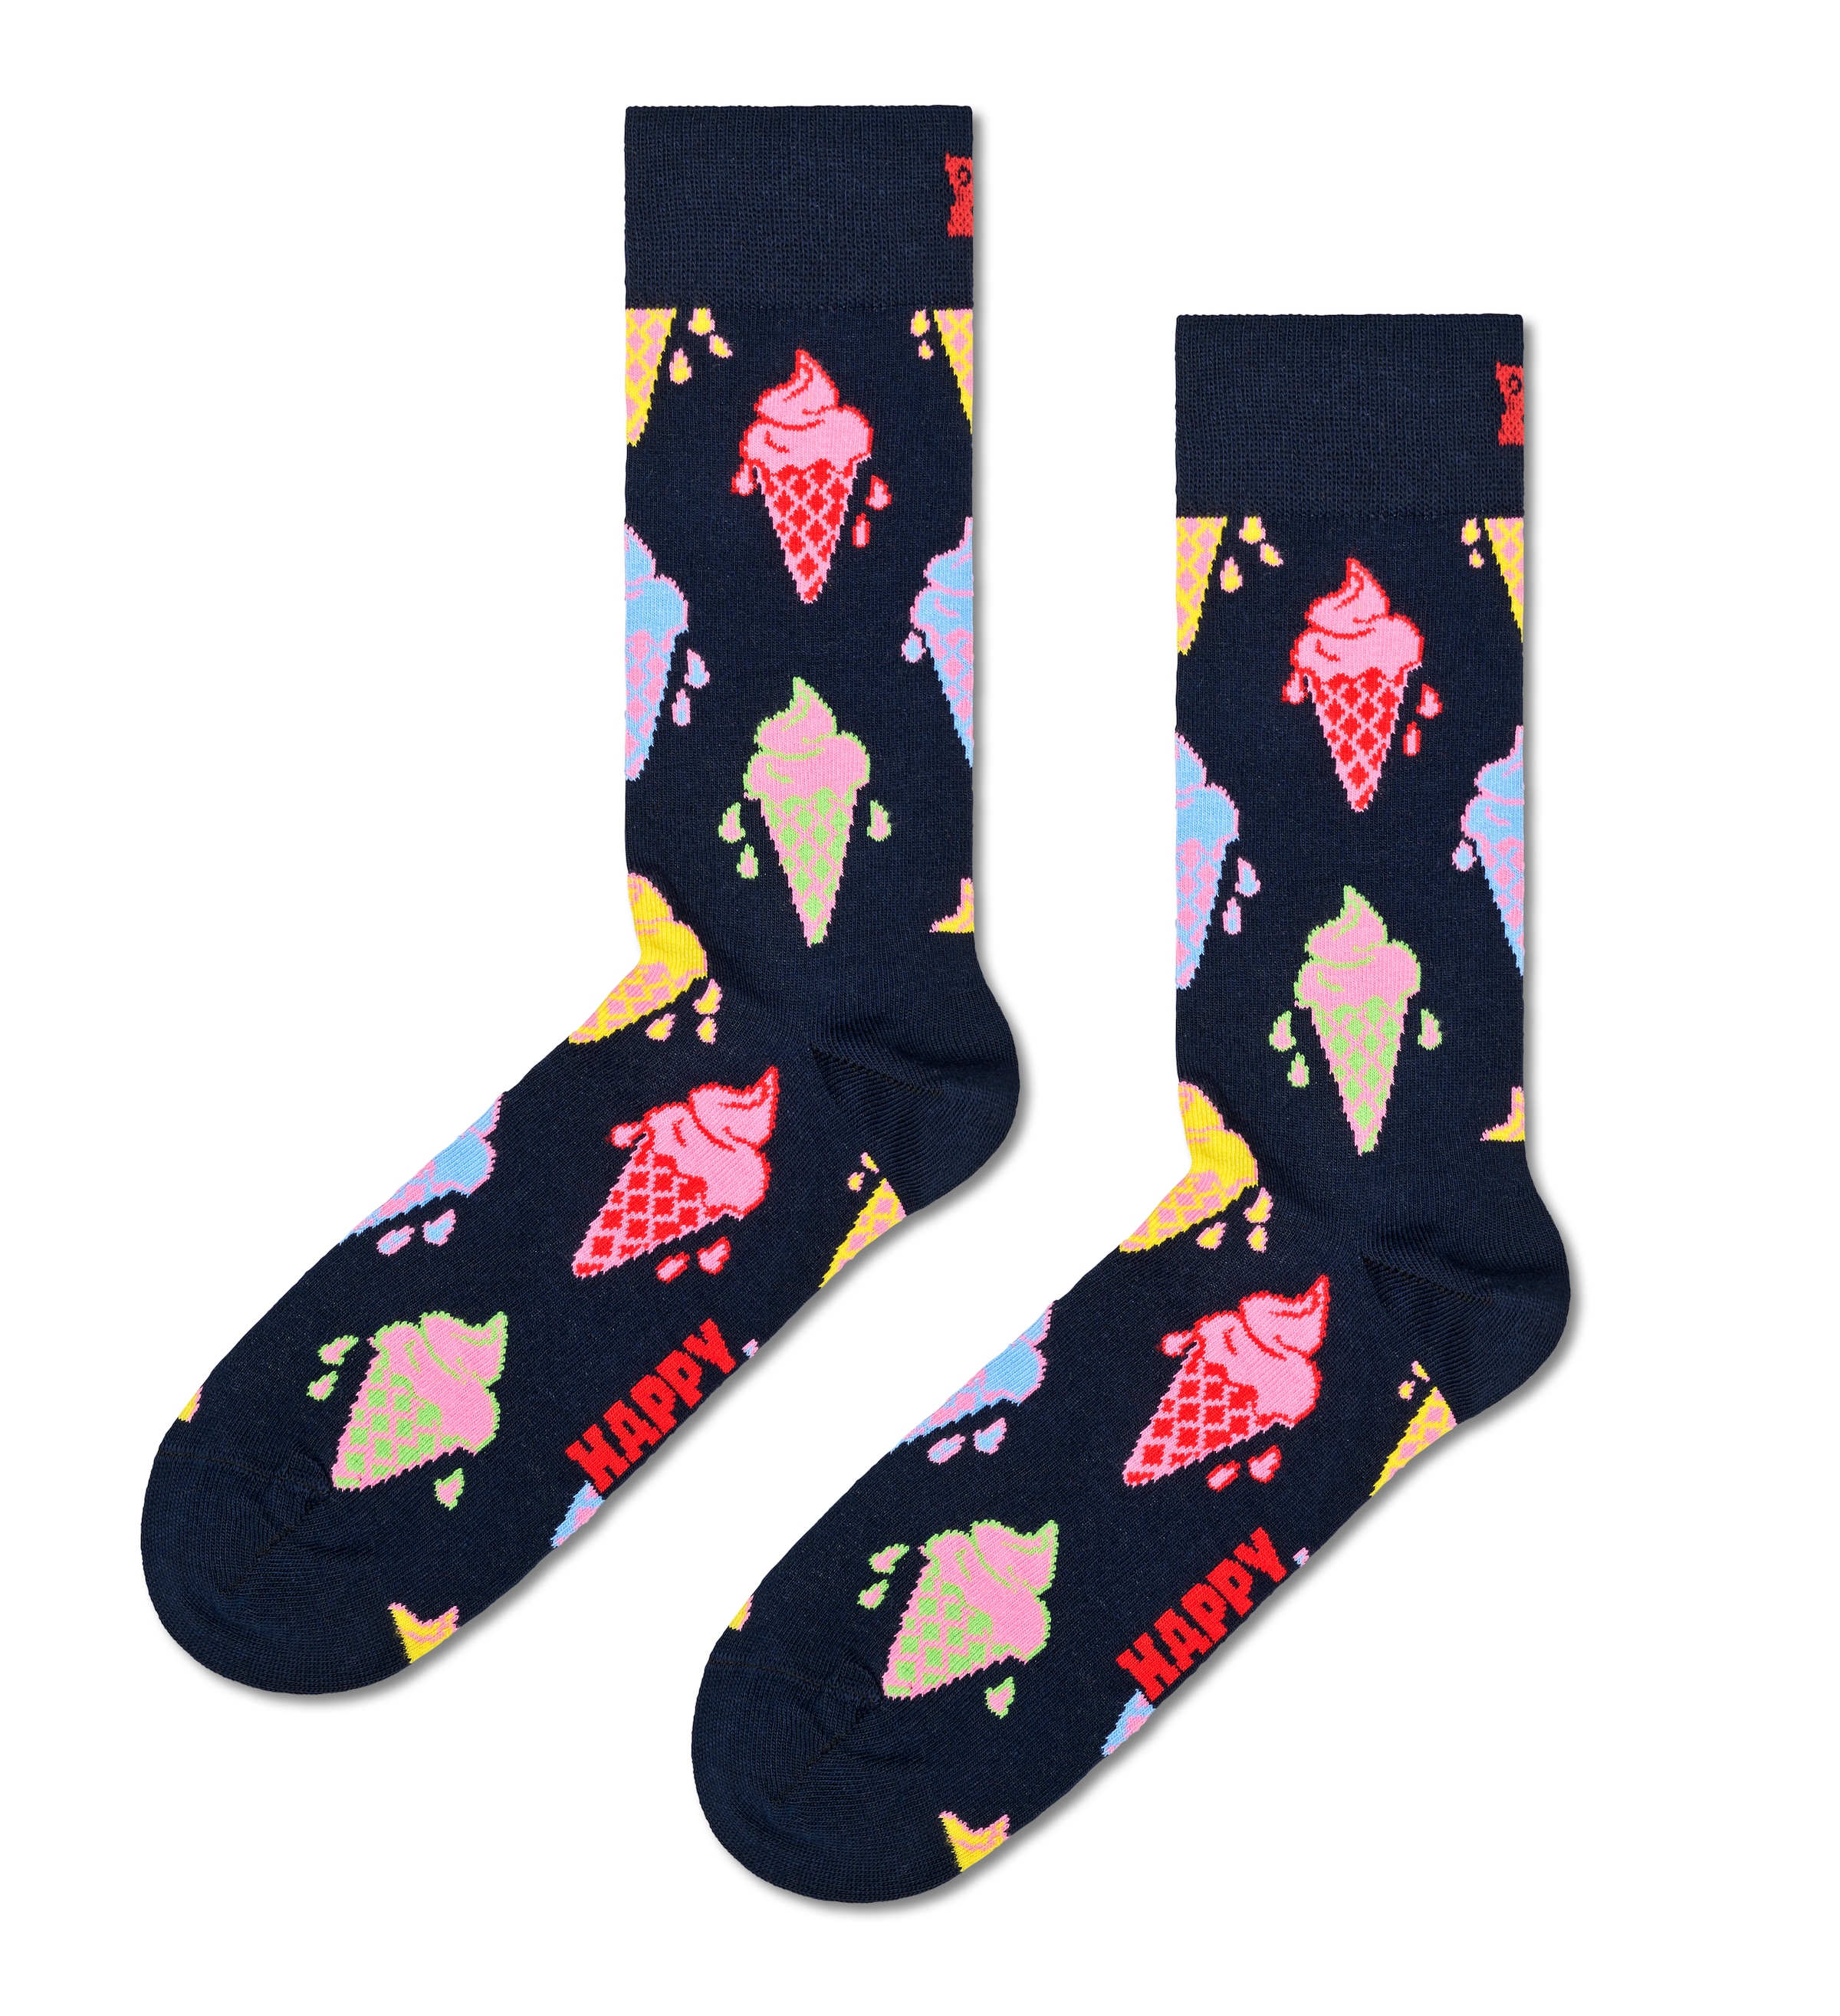 Happy Socks Socken, Navy Gift Set